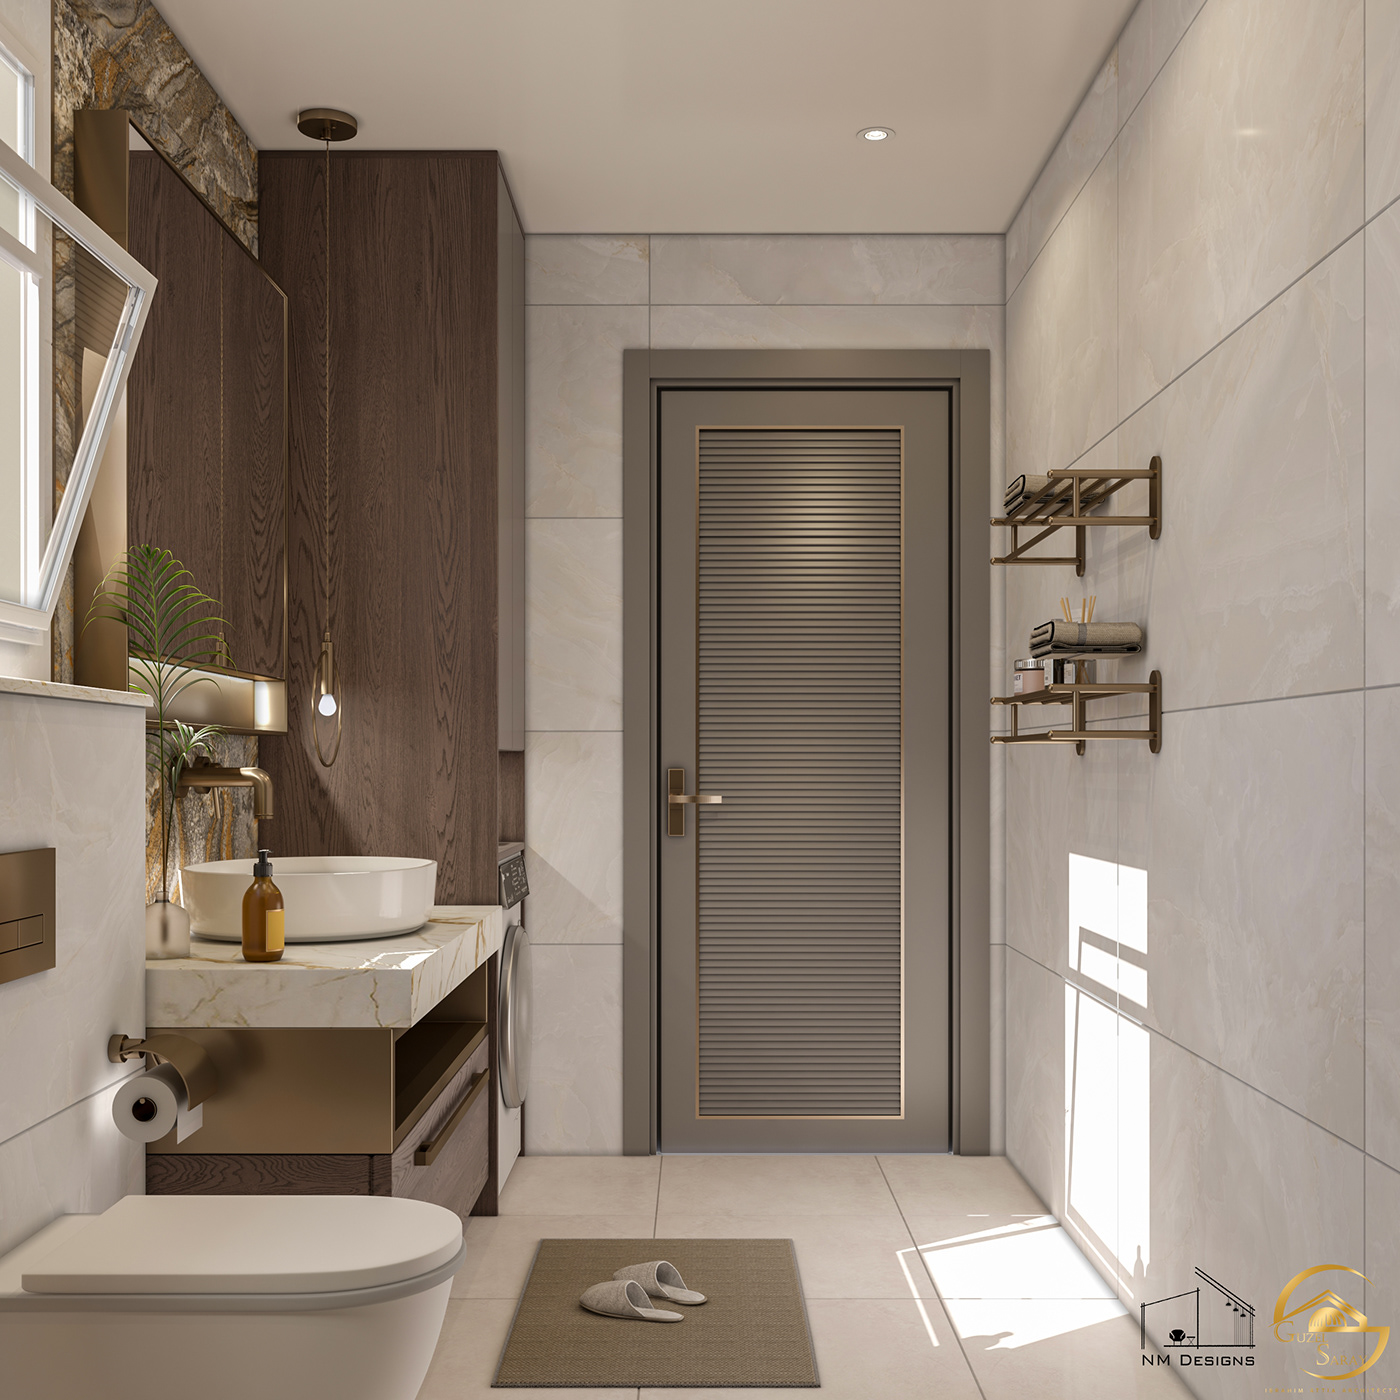 indoor architecture visualization bathroom toilet modern interior design  Render 3ds max vray